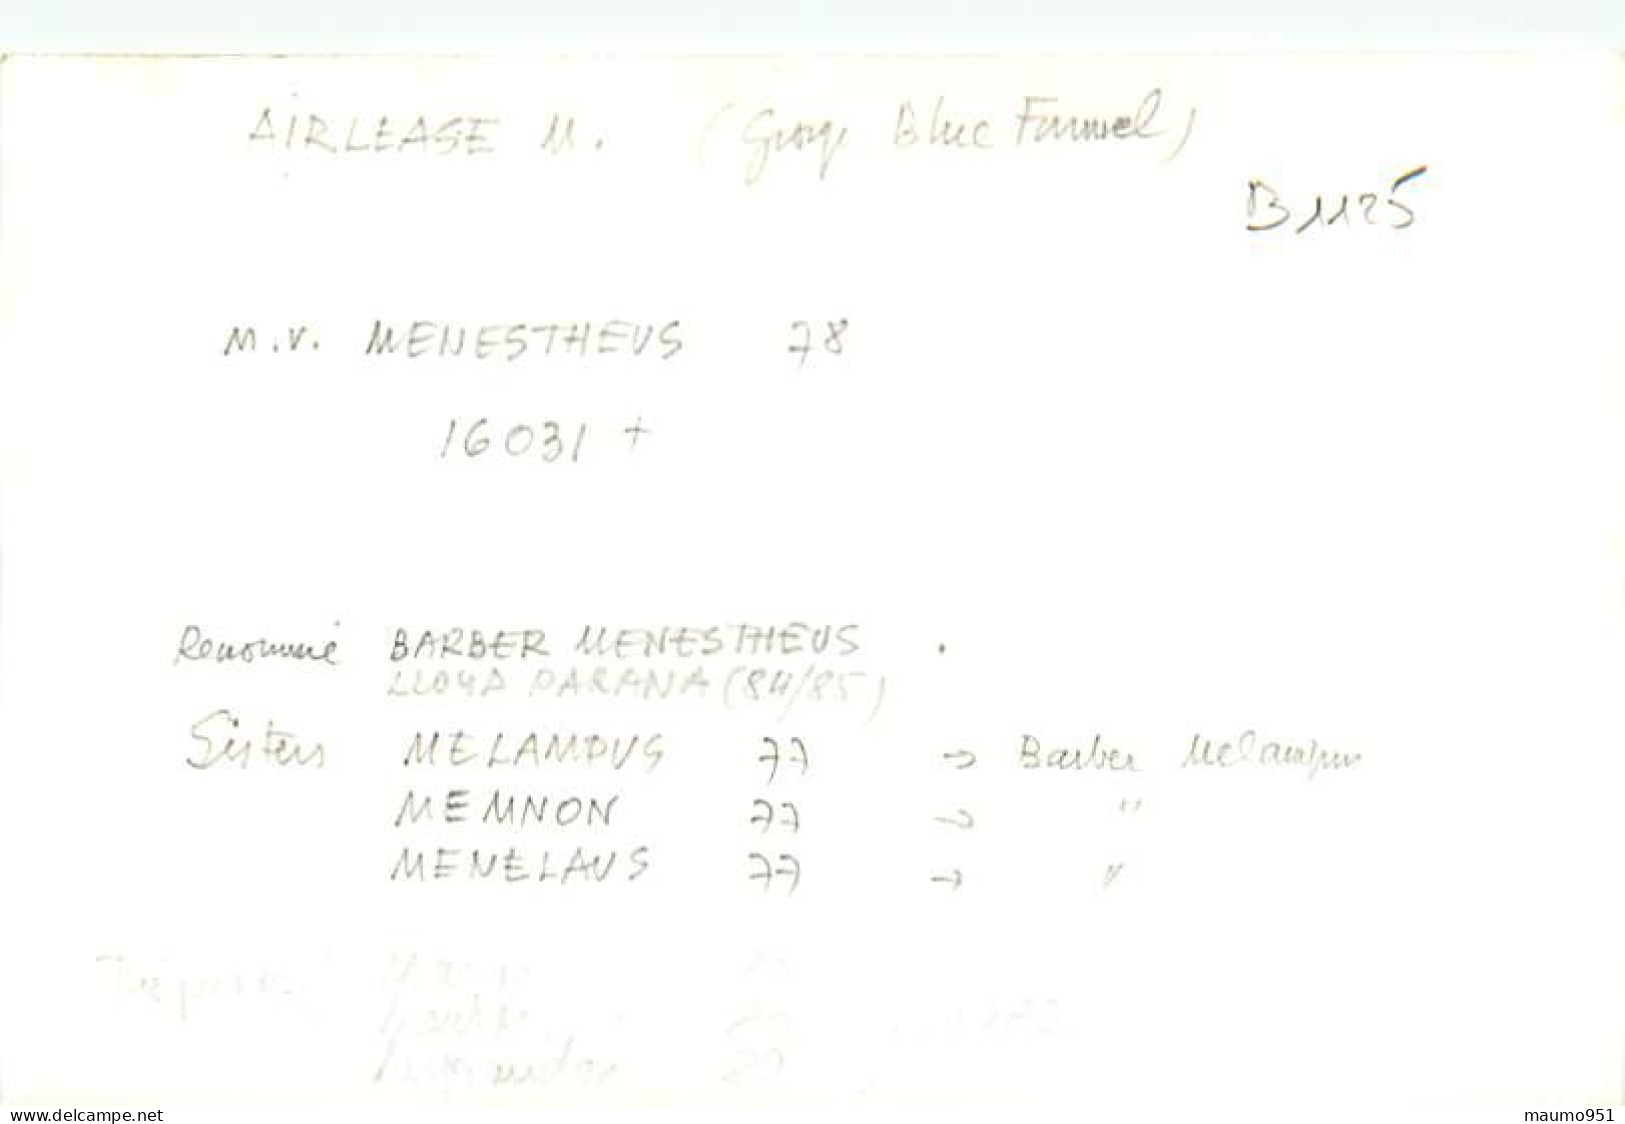 1125 CLICHE BATEAU PREFIXE M.V. - LE MENESTHEUS DE 1978 - CATEGORIE 16031 TONNES - FORMAT CPA N° B 1125 - Boats